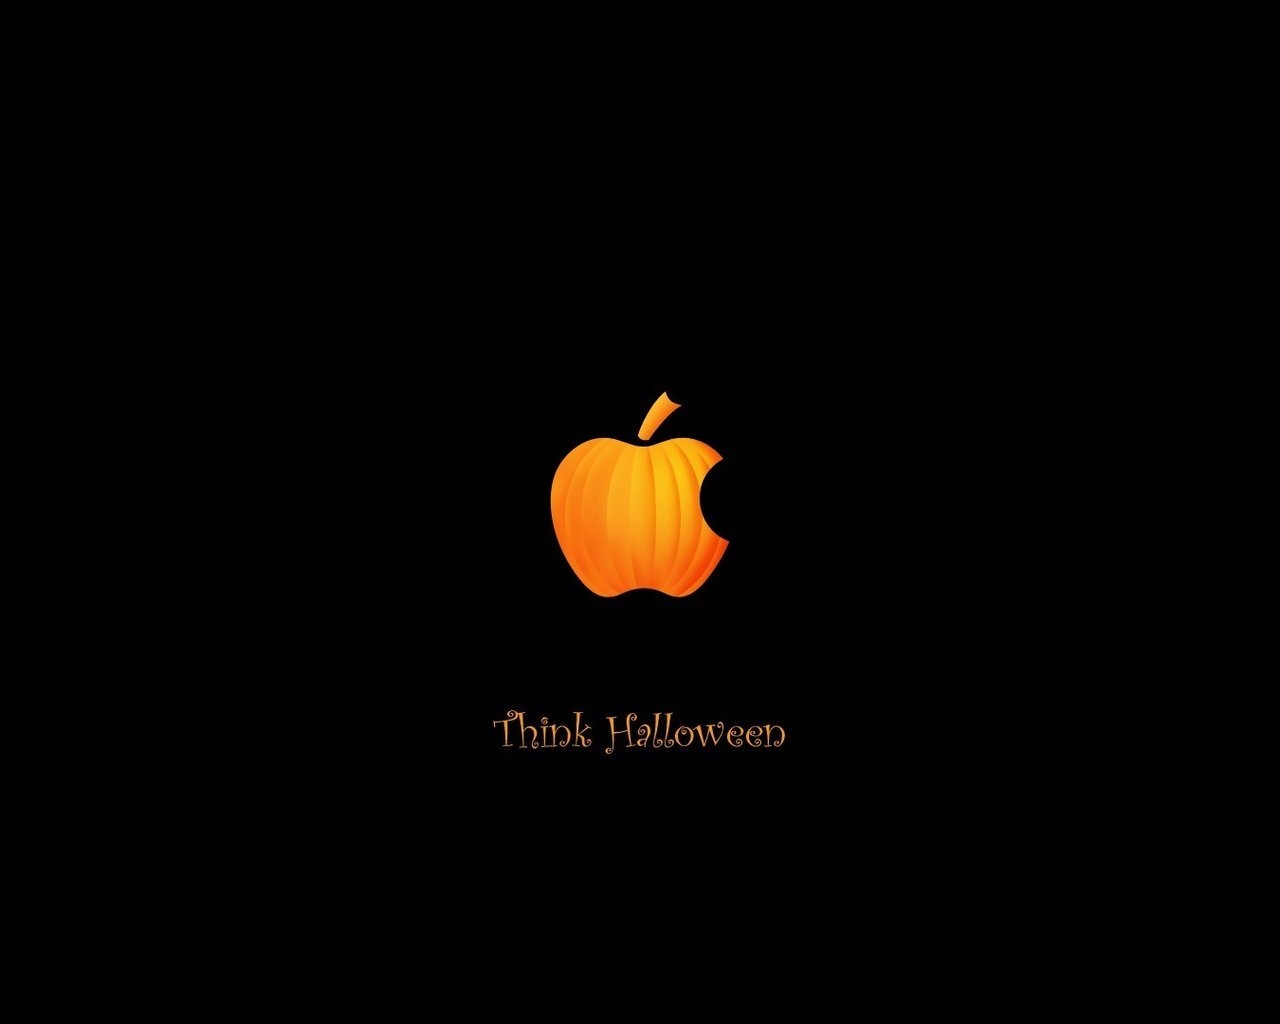 Pumpkin Apple for 1280 x 1024 resolution